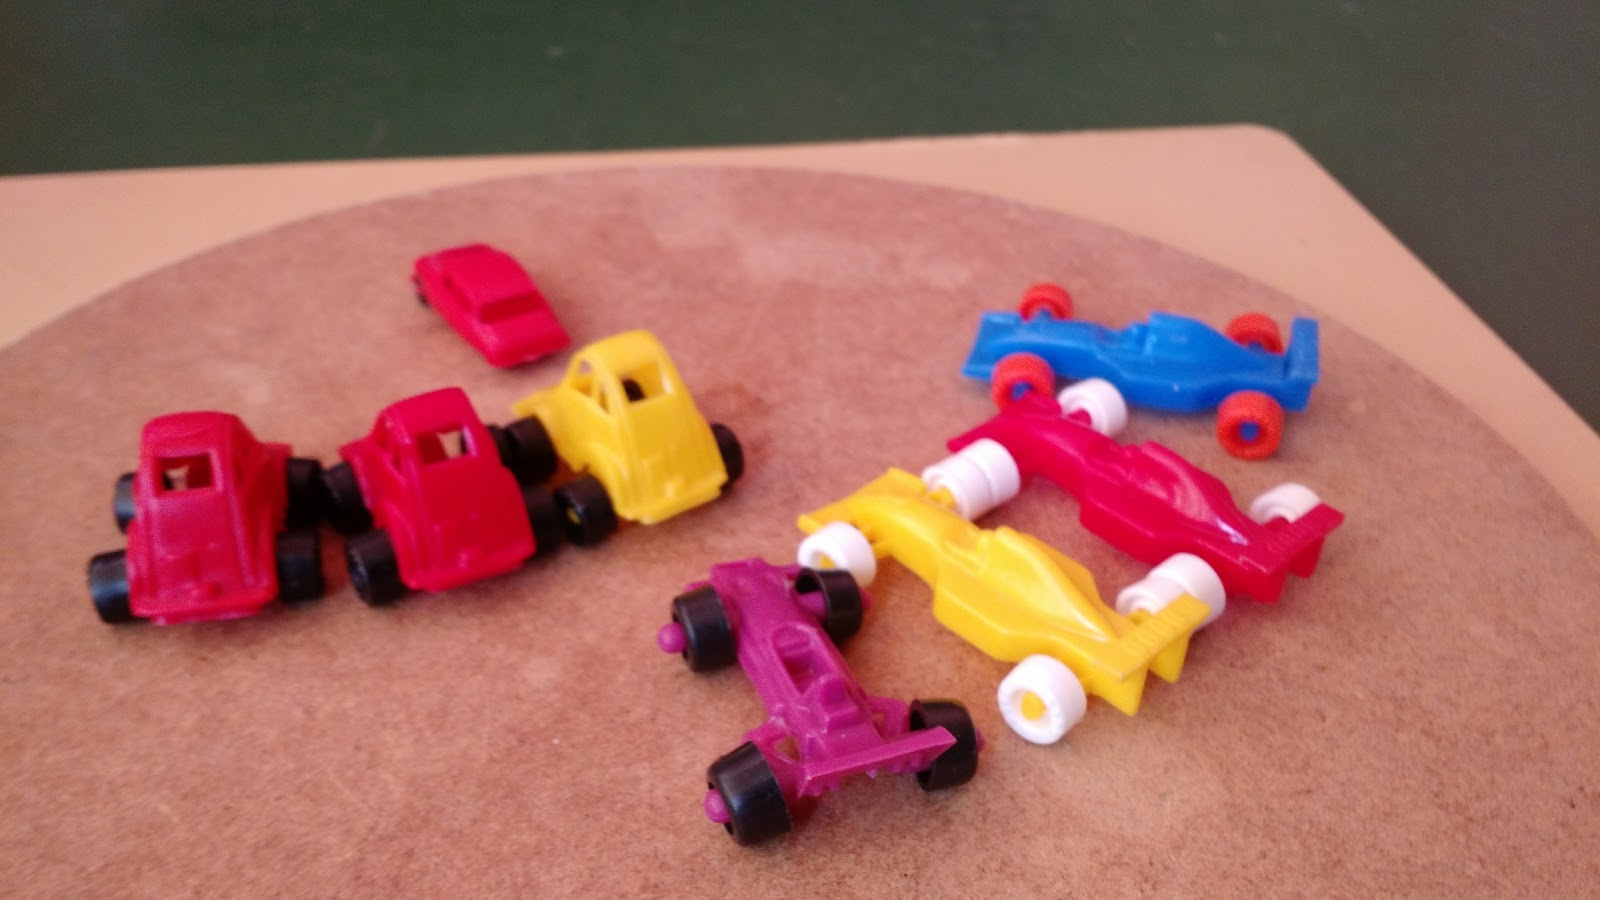 Carrinhos de plástico antigos um com etiqueta da Globo 6 cm e outro de  corrida 7,8 cm usados - Taffy Shop - Brechó de brinquedos